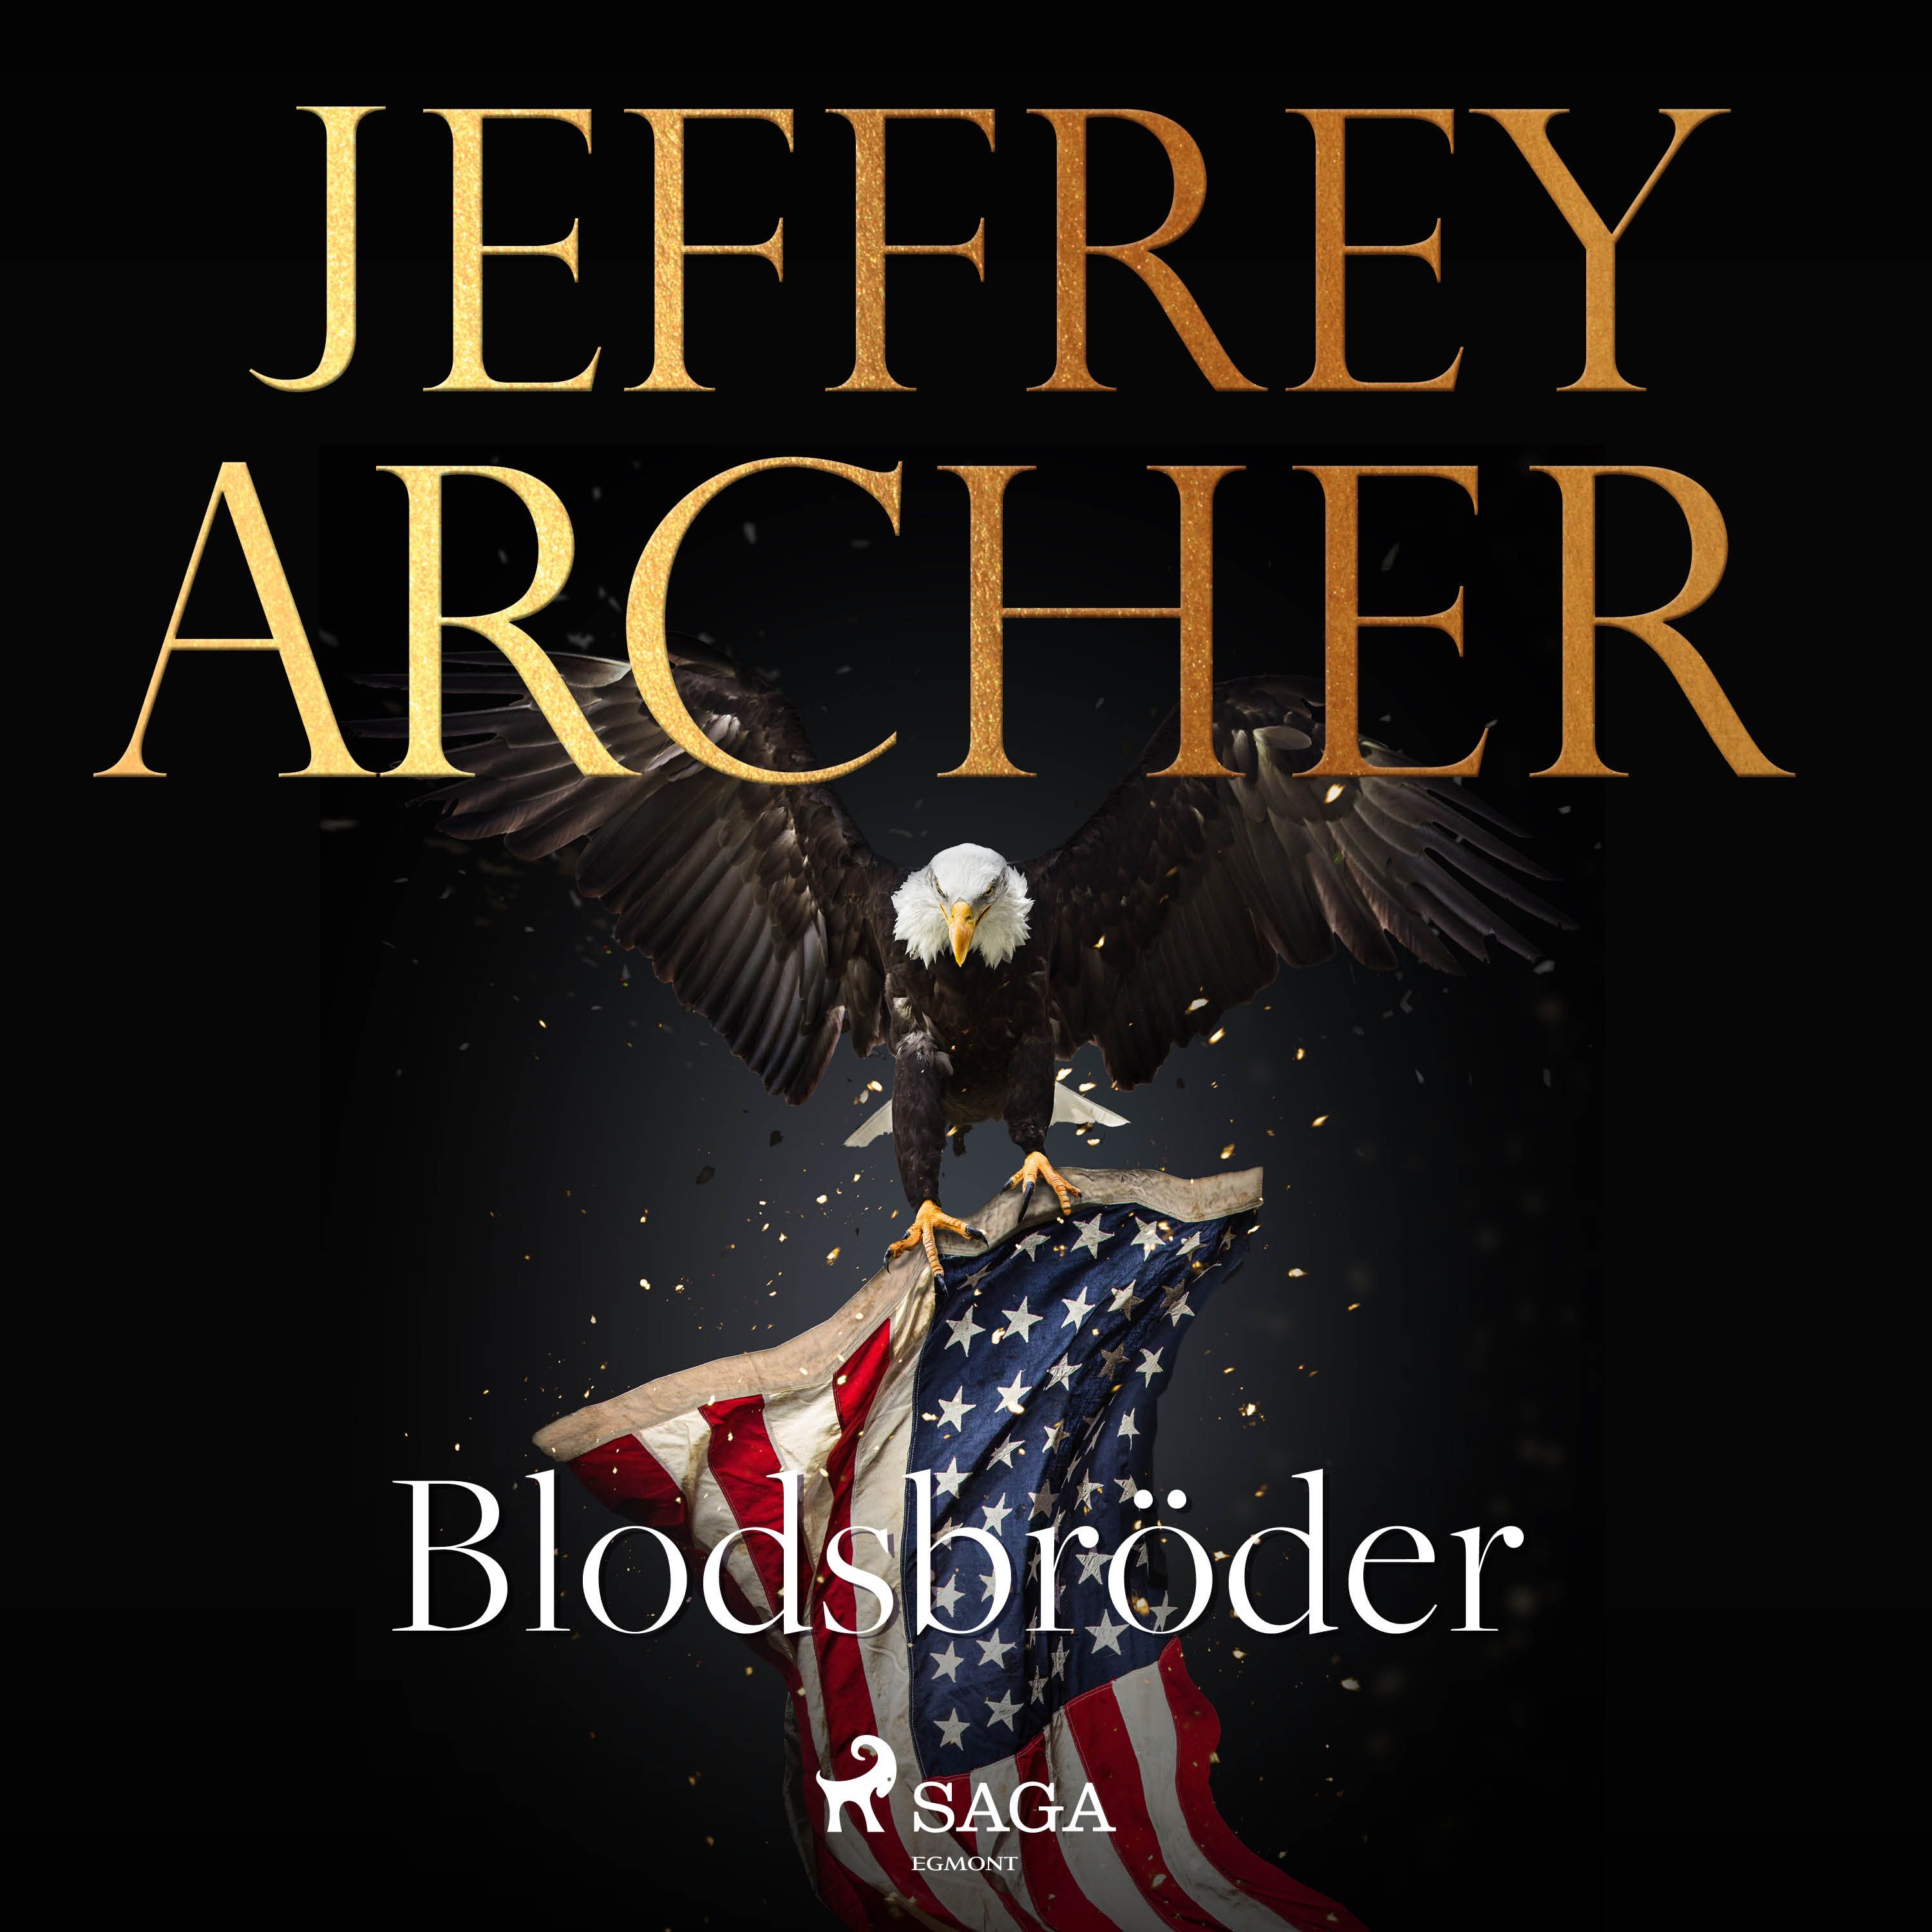 Blodsbröder, ljudbok av Jeffrey Archer